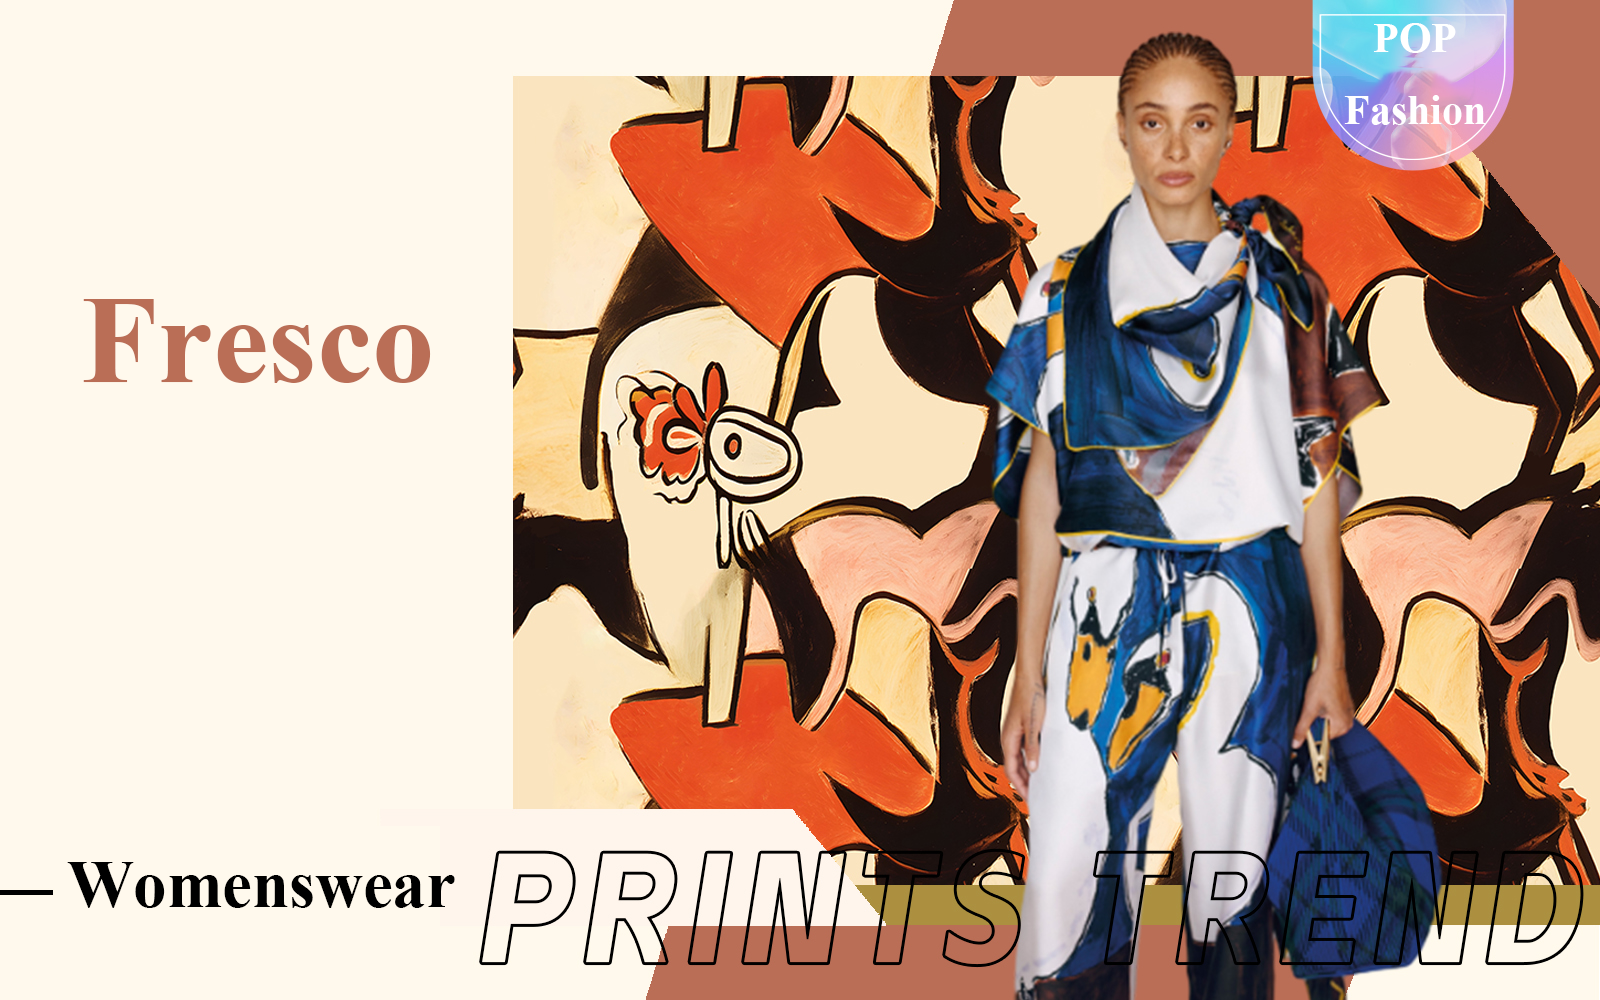 Fresco -- The Pattern Trend for Womenswear